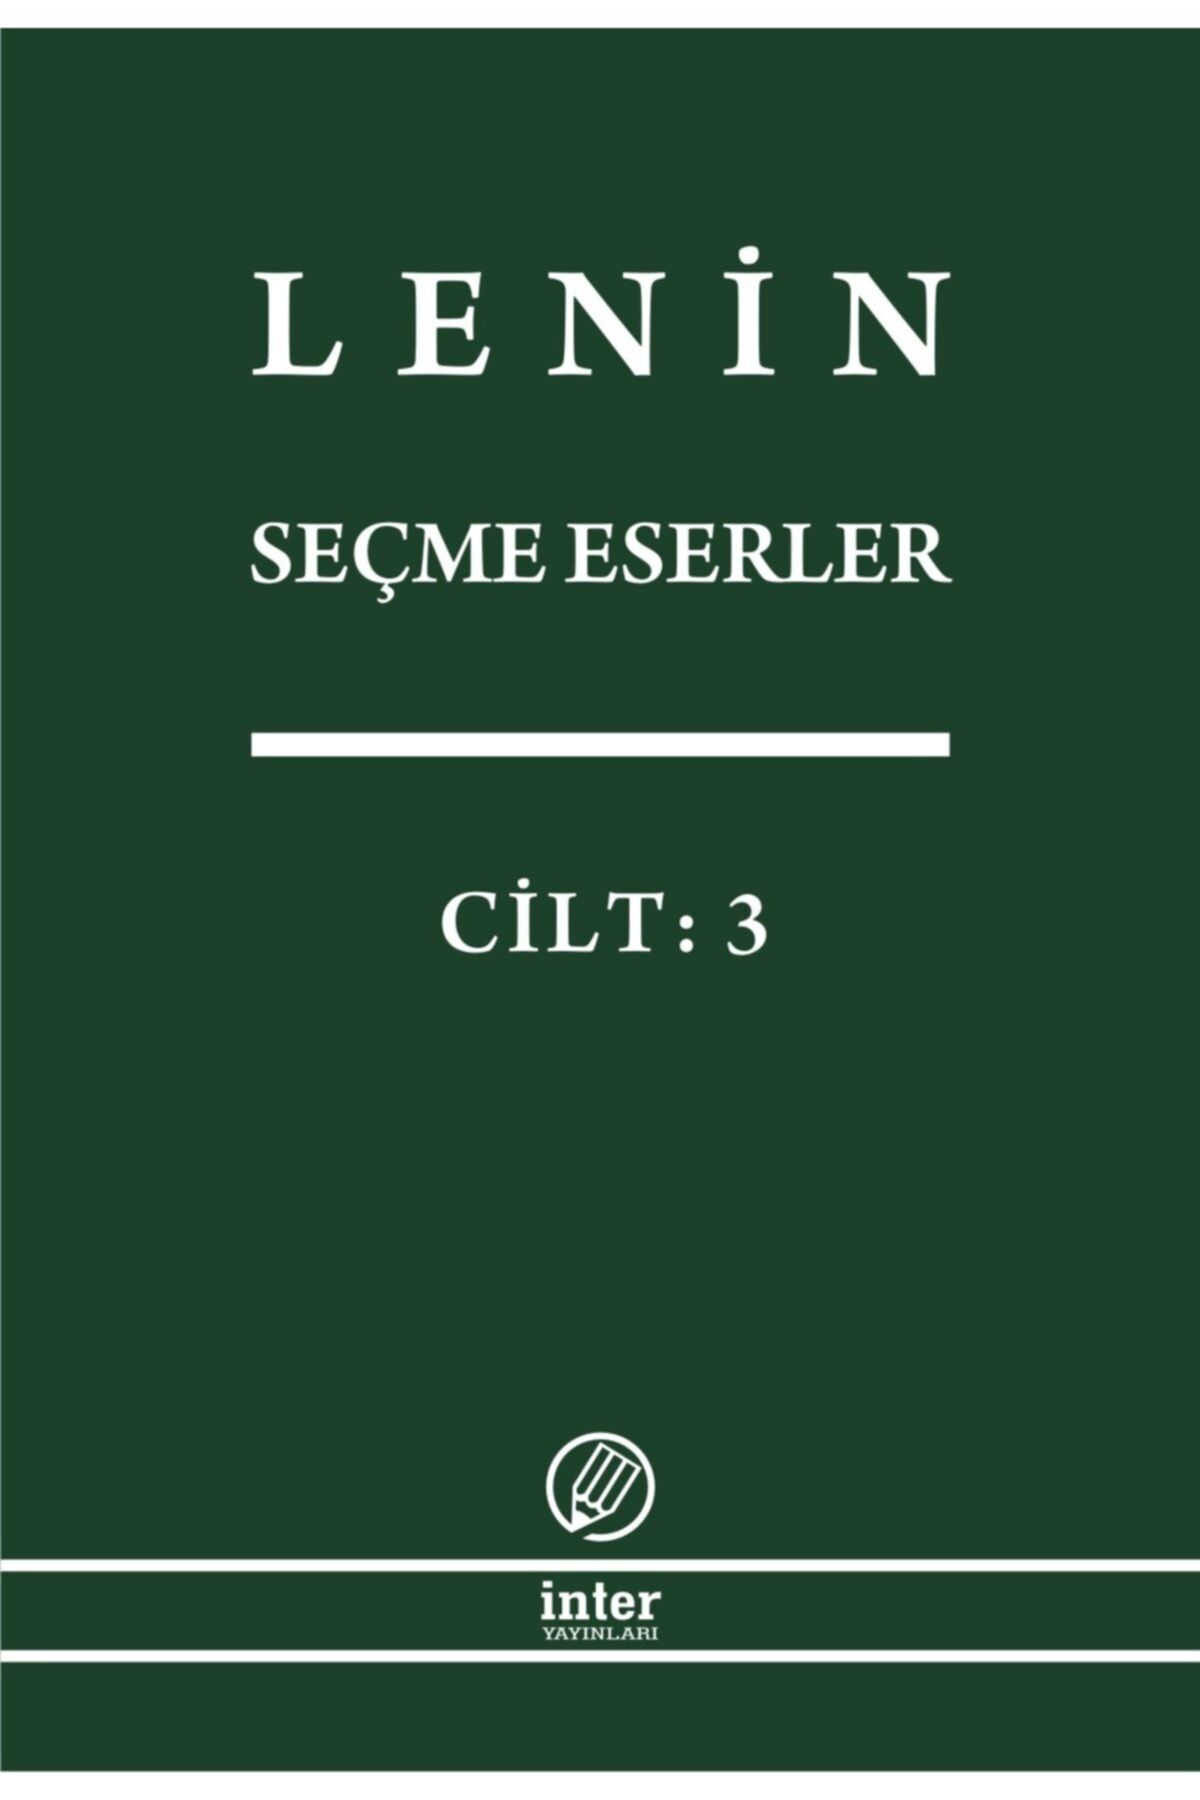 İnter Yayınları Lenin Seçme Eserler Cilt 3